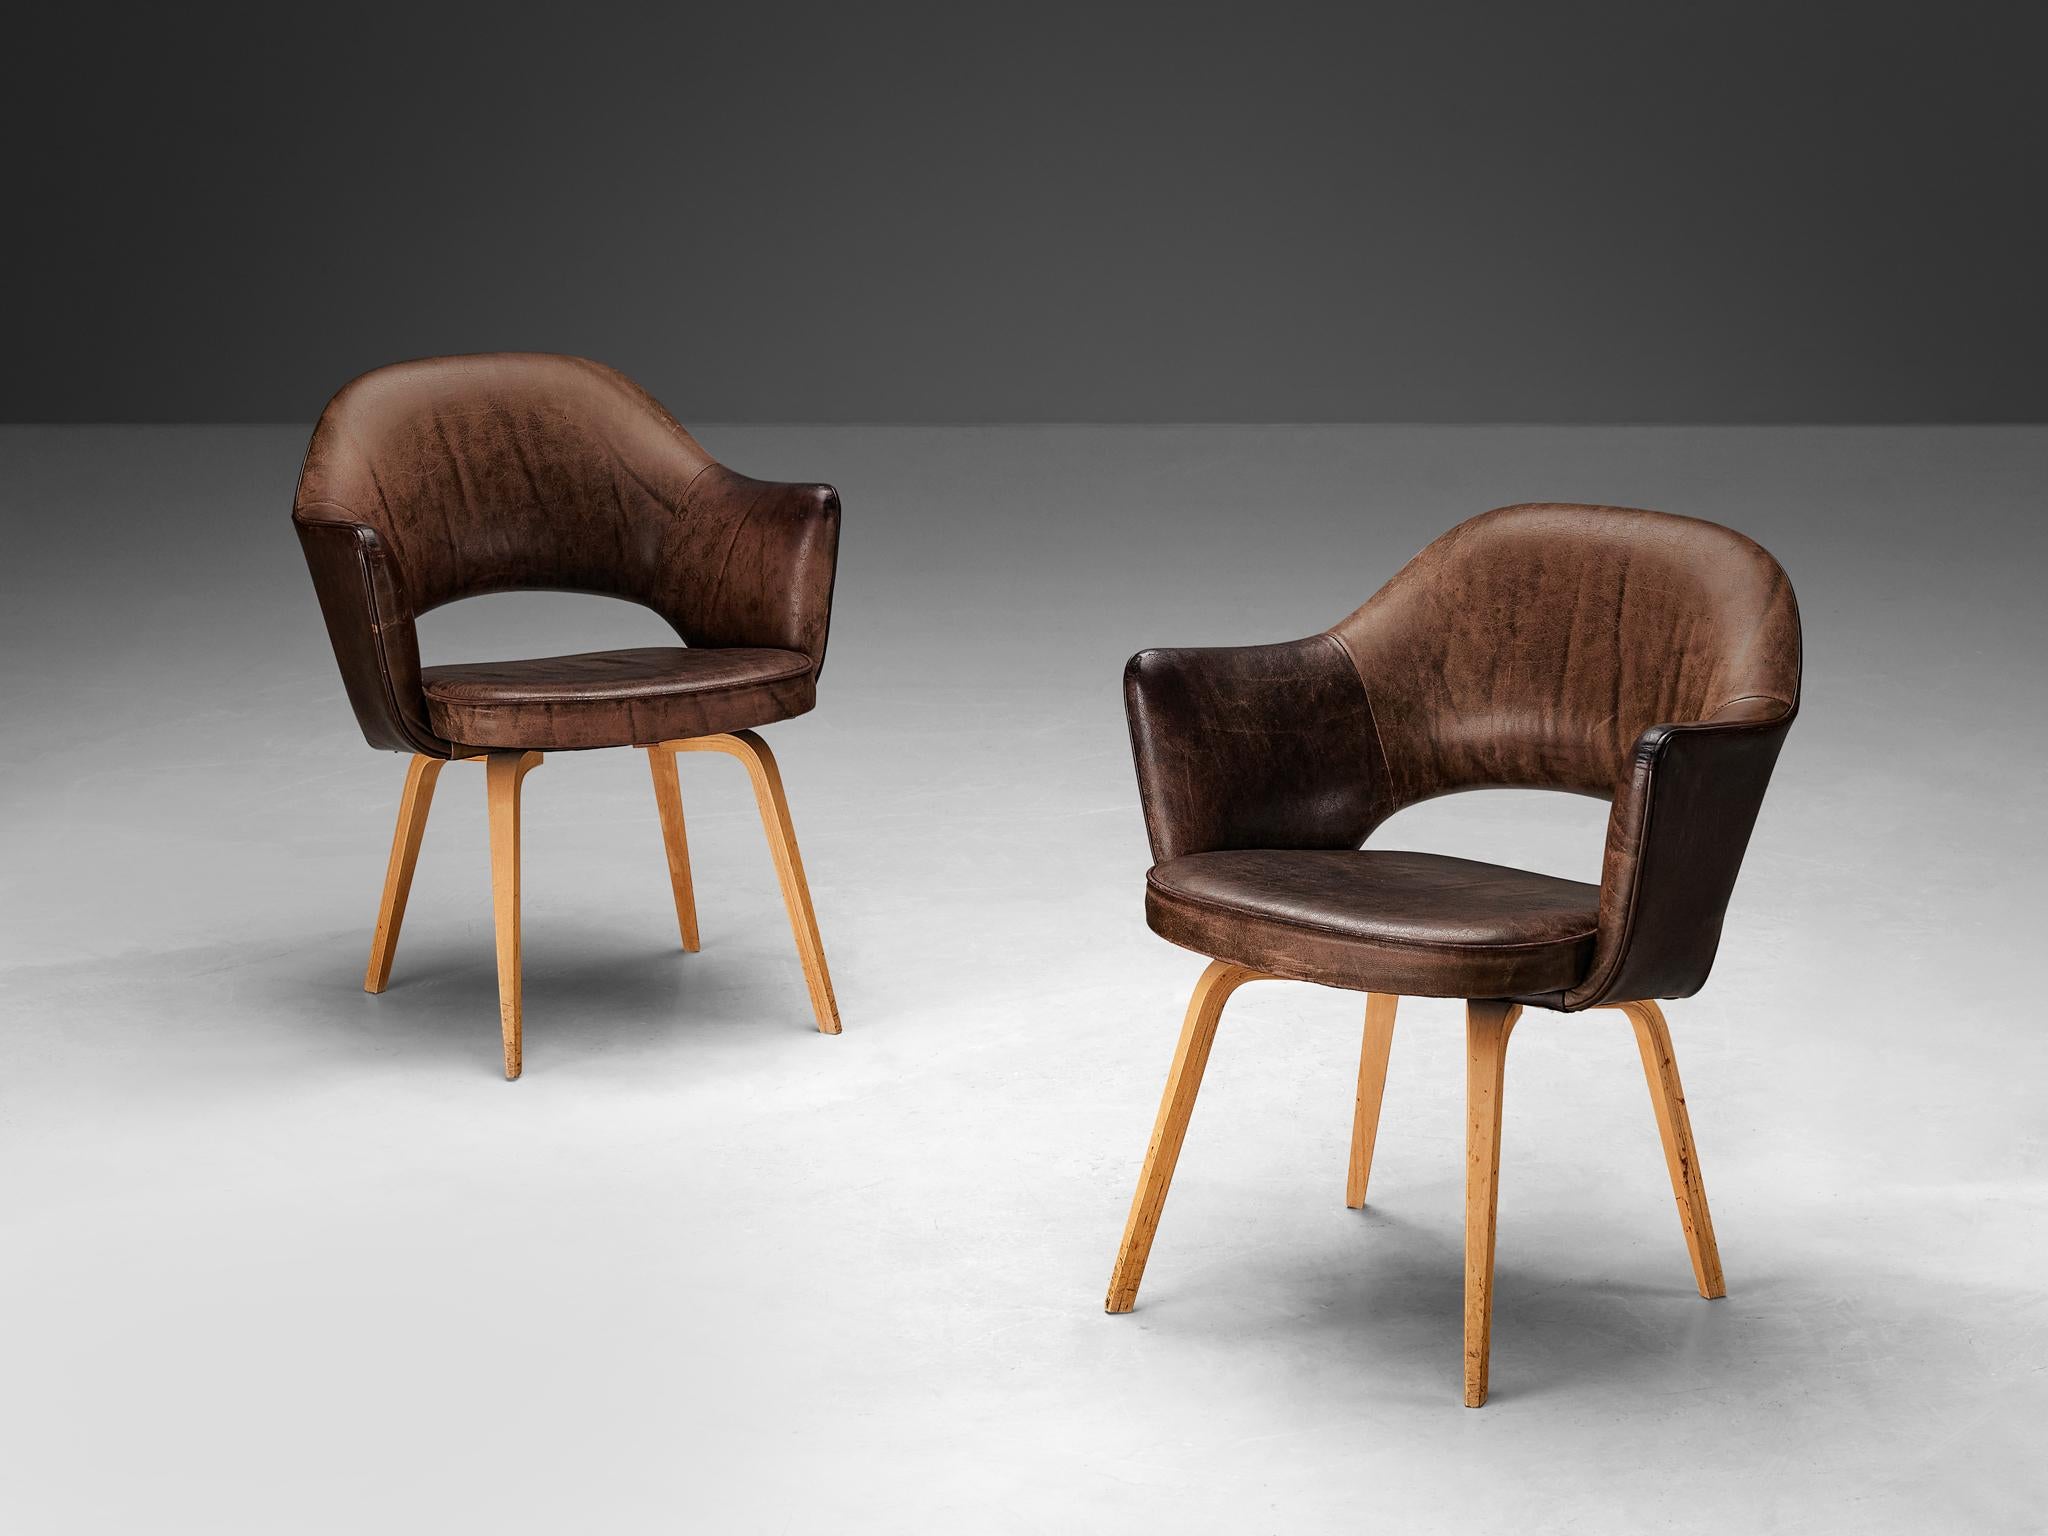 Eero Saarinen pour Knoll International, chaise de salle à manger, modèle 71, chêne, cuir patiné, États-Unis, conception 1948, production ultérieure

Paire de chaises de forme organique conçues par Eero Saarinen. Une forme fluide et sculpturale. Ce